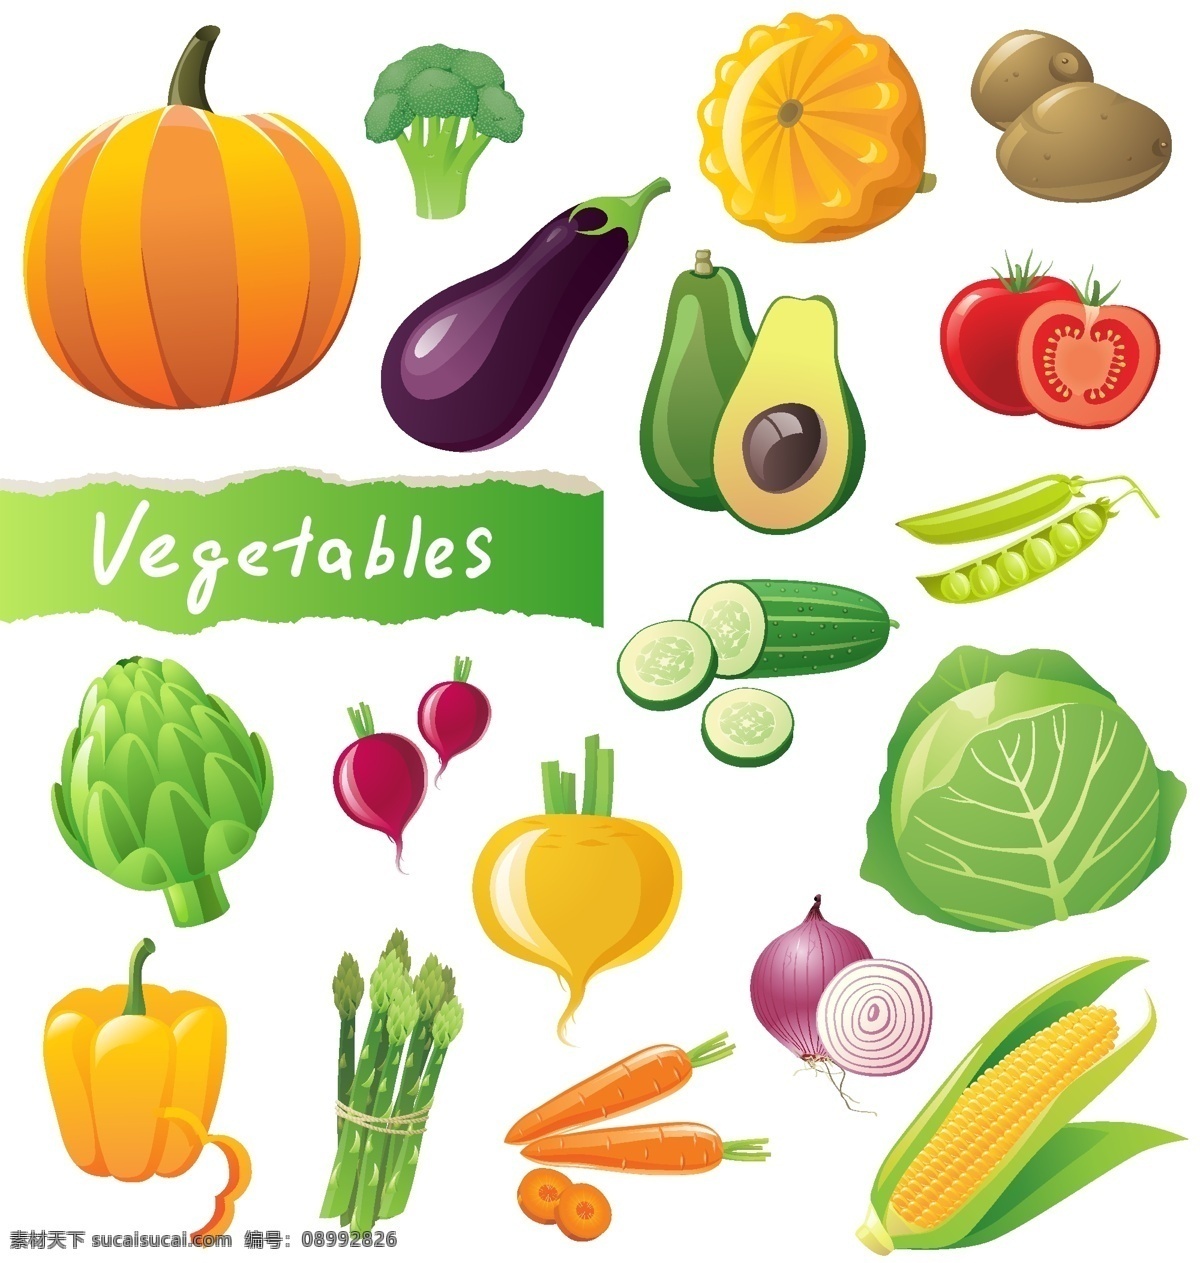 蔬菜矢量素材 蔬菜 南瓜 花菜 茄子 土豆 黄瓜 辣椒 包菜 胡萝卜 玉米 矢量素材